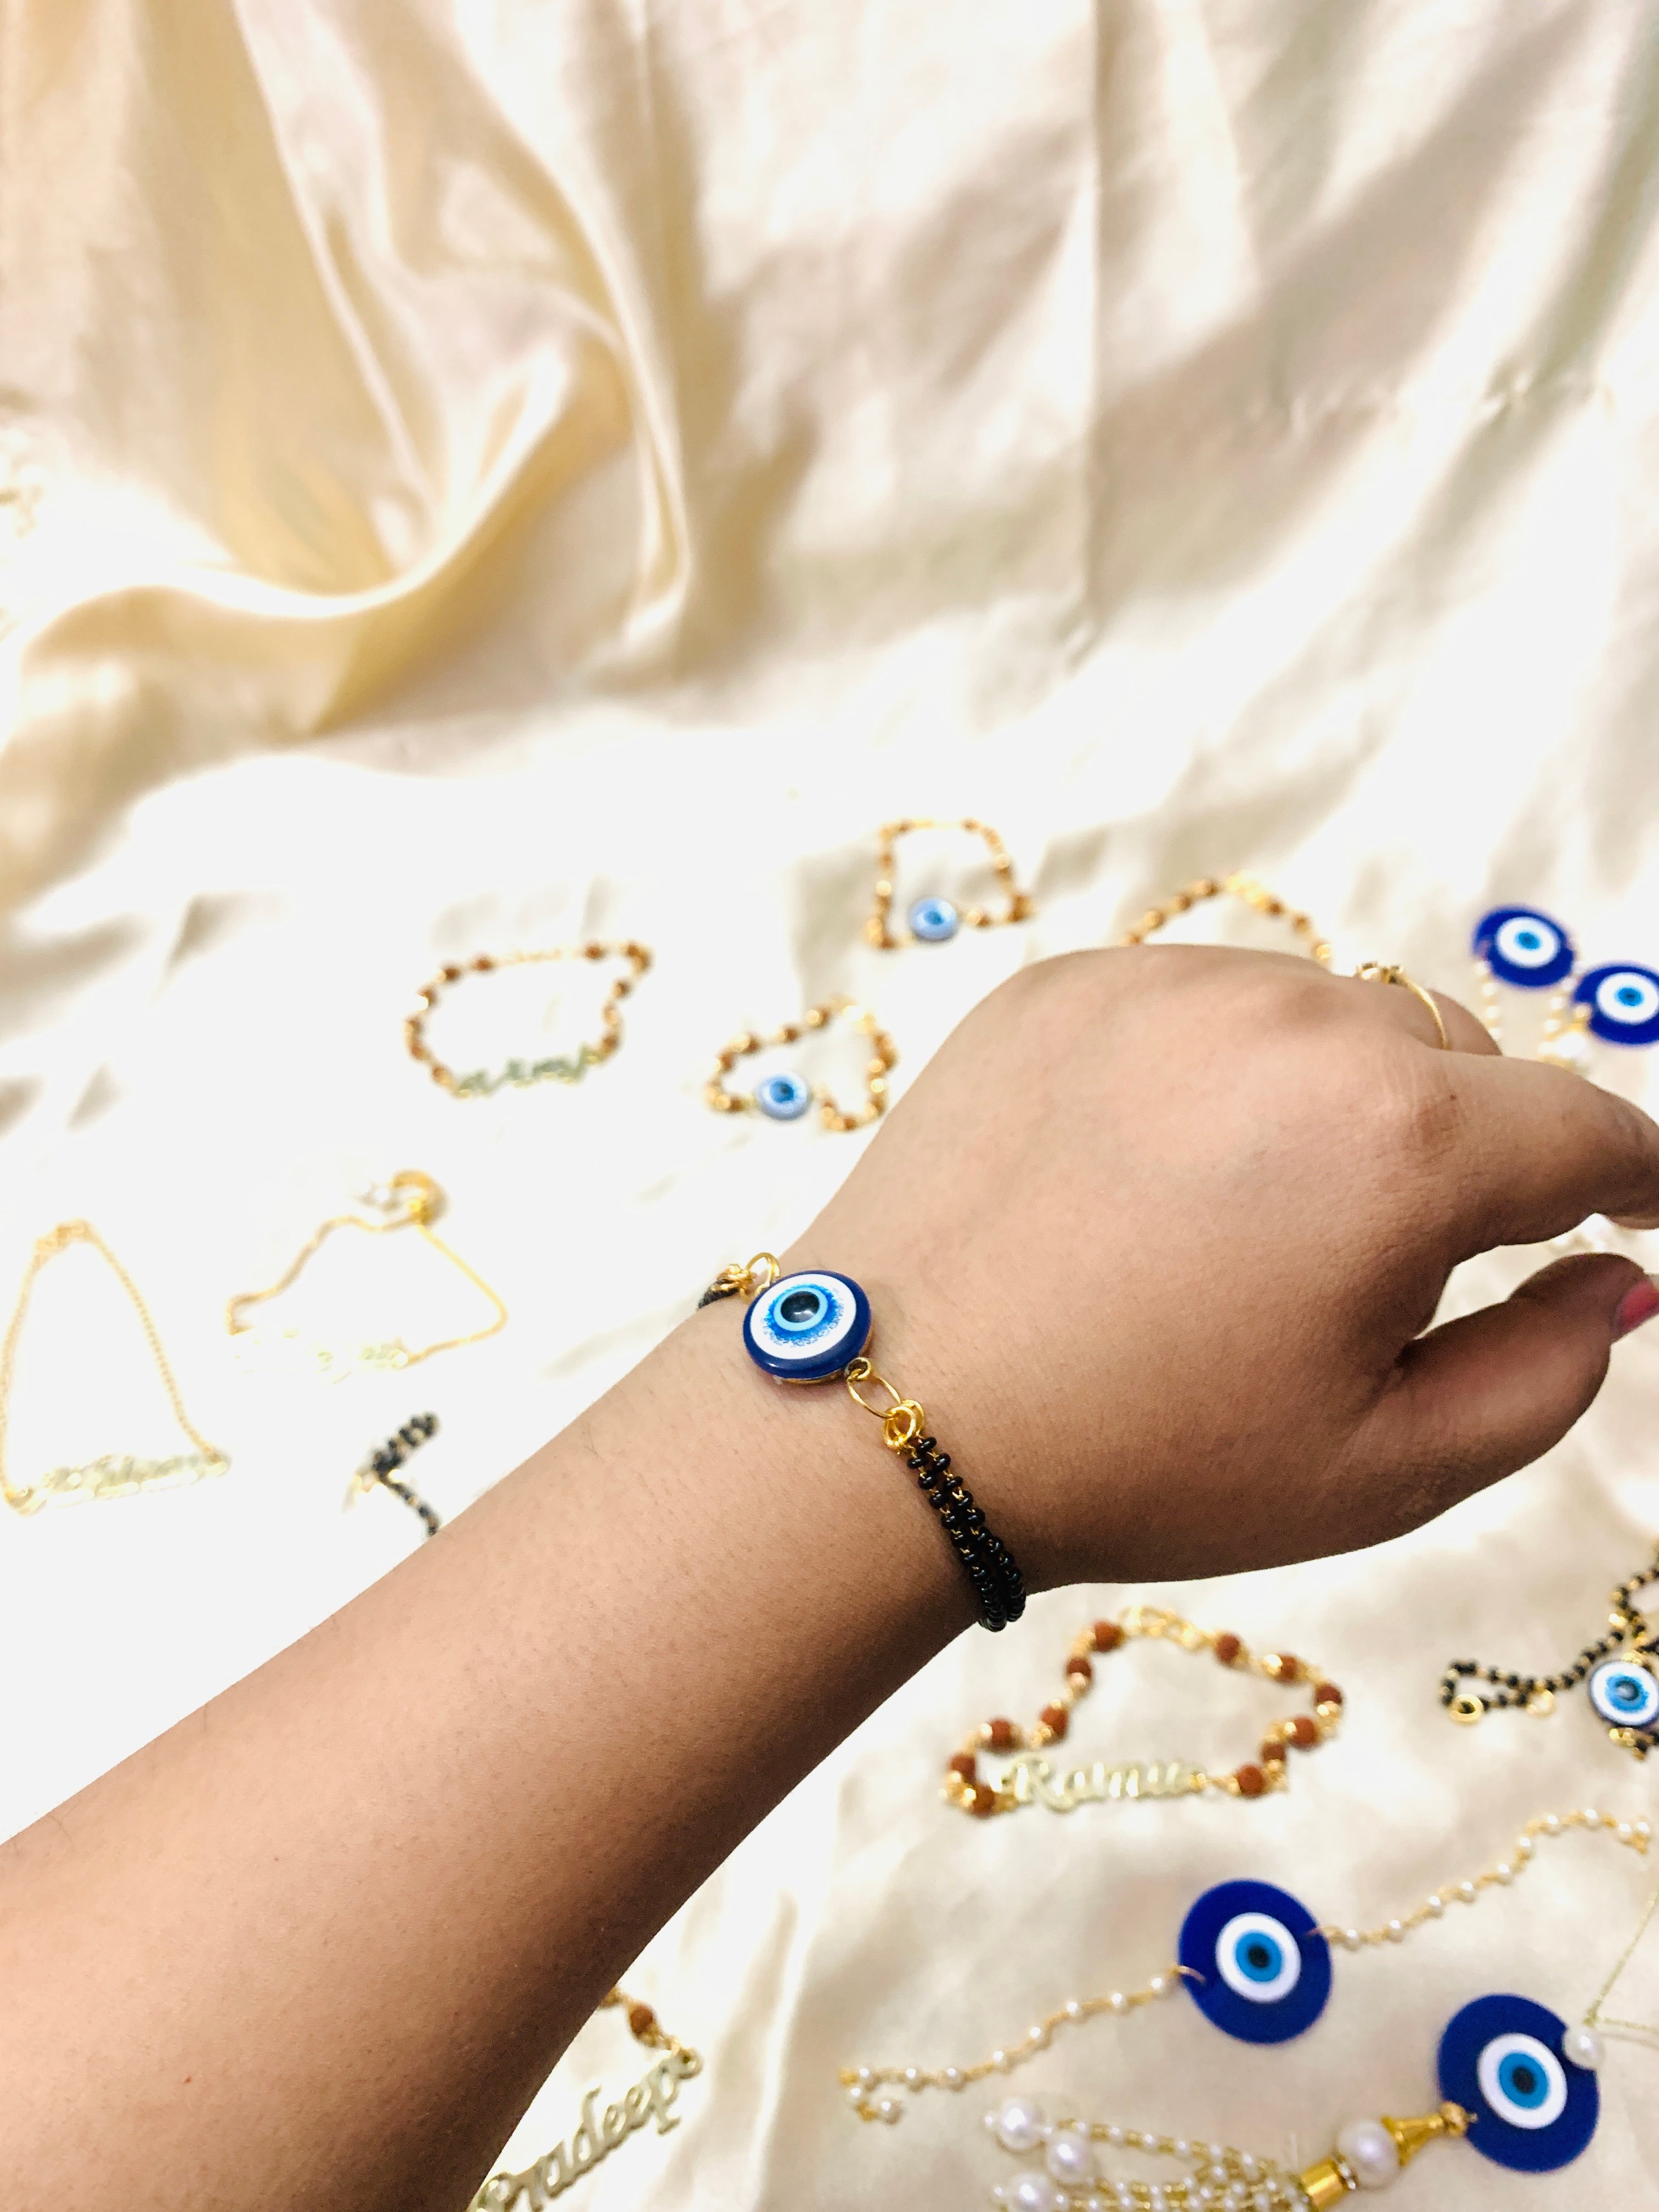 Evil Eye Bracelet, Blue Evil Eye Beads, Greek Evil Eye Jewelry, Christmas  Gift for Her, Gold Cuff Bracelet, Murano Jewelry, Jewelry Box - Etsy | Evil  eye jewelry, Murano jewelry, Eye jewelry